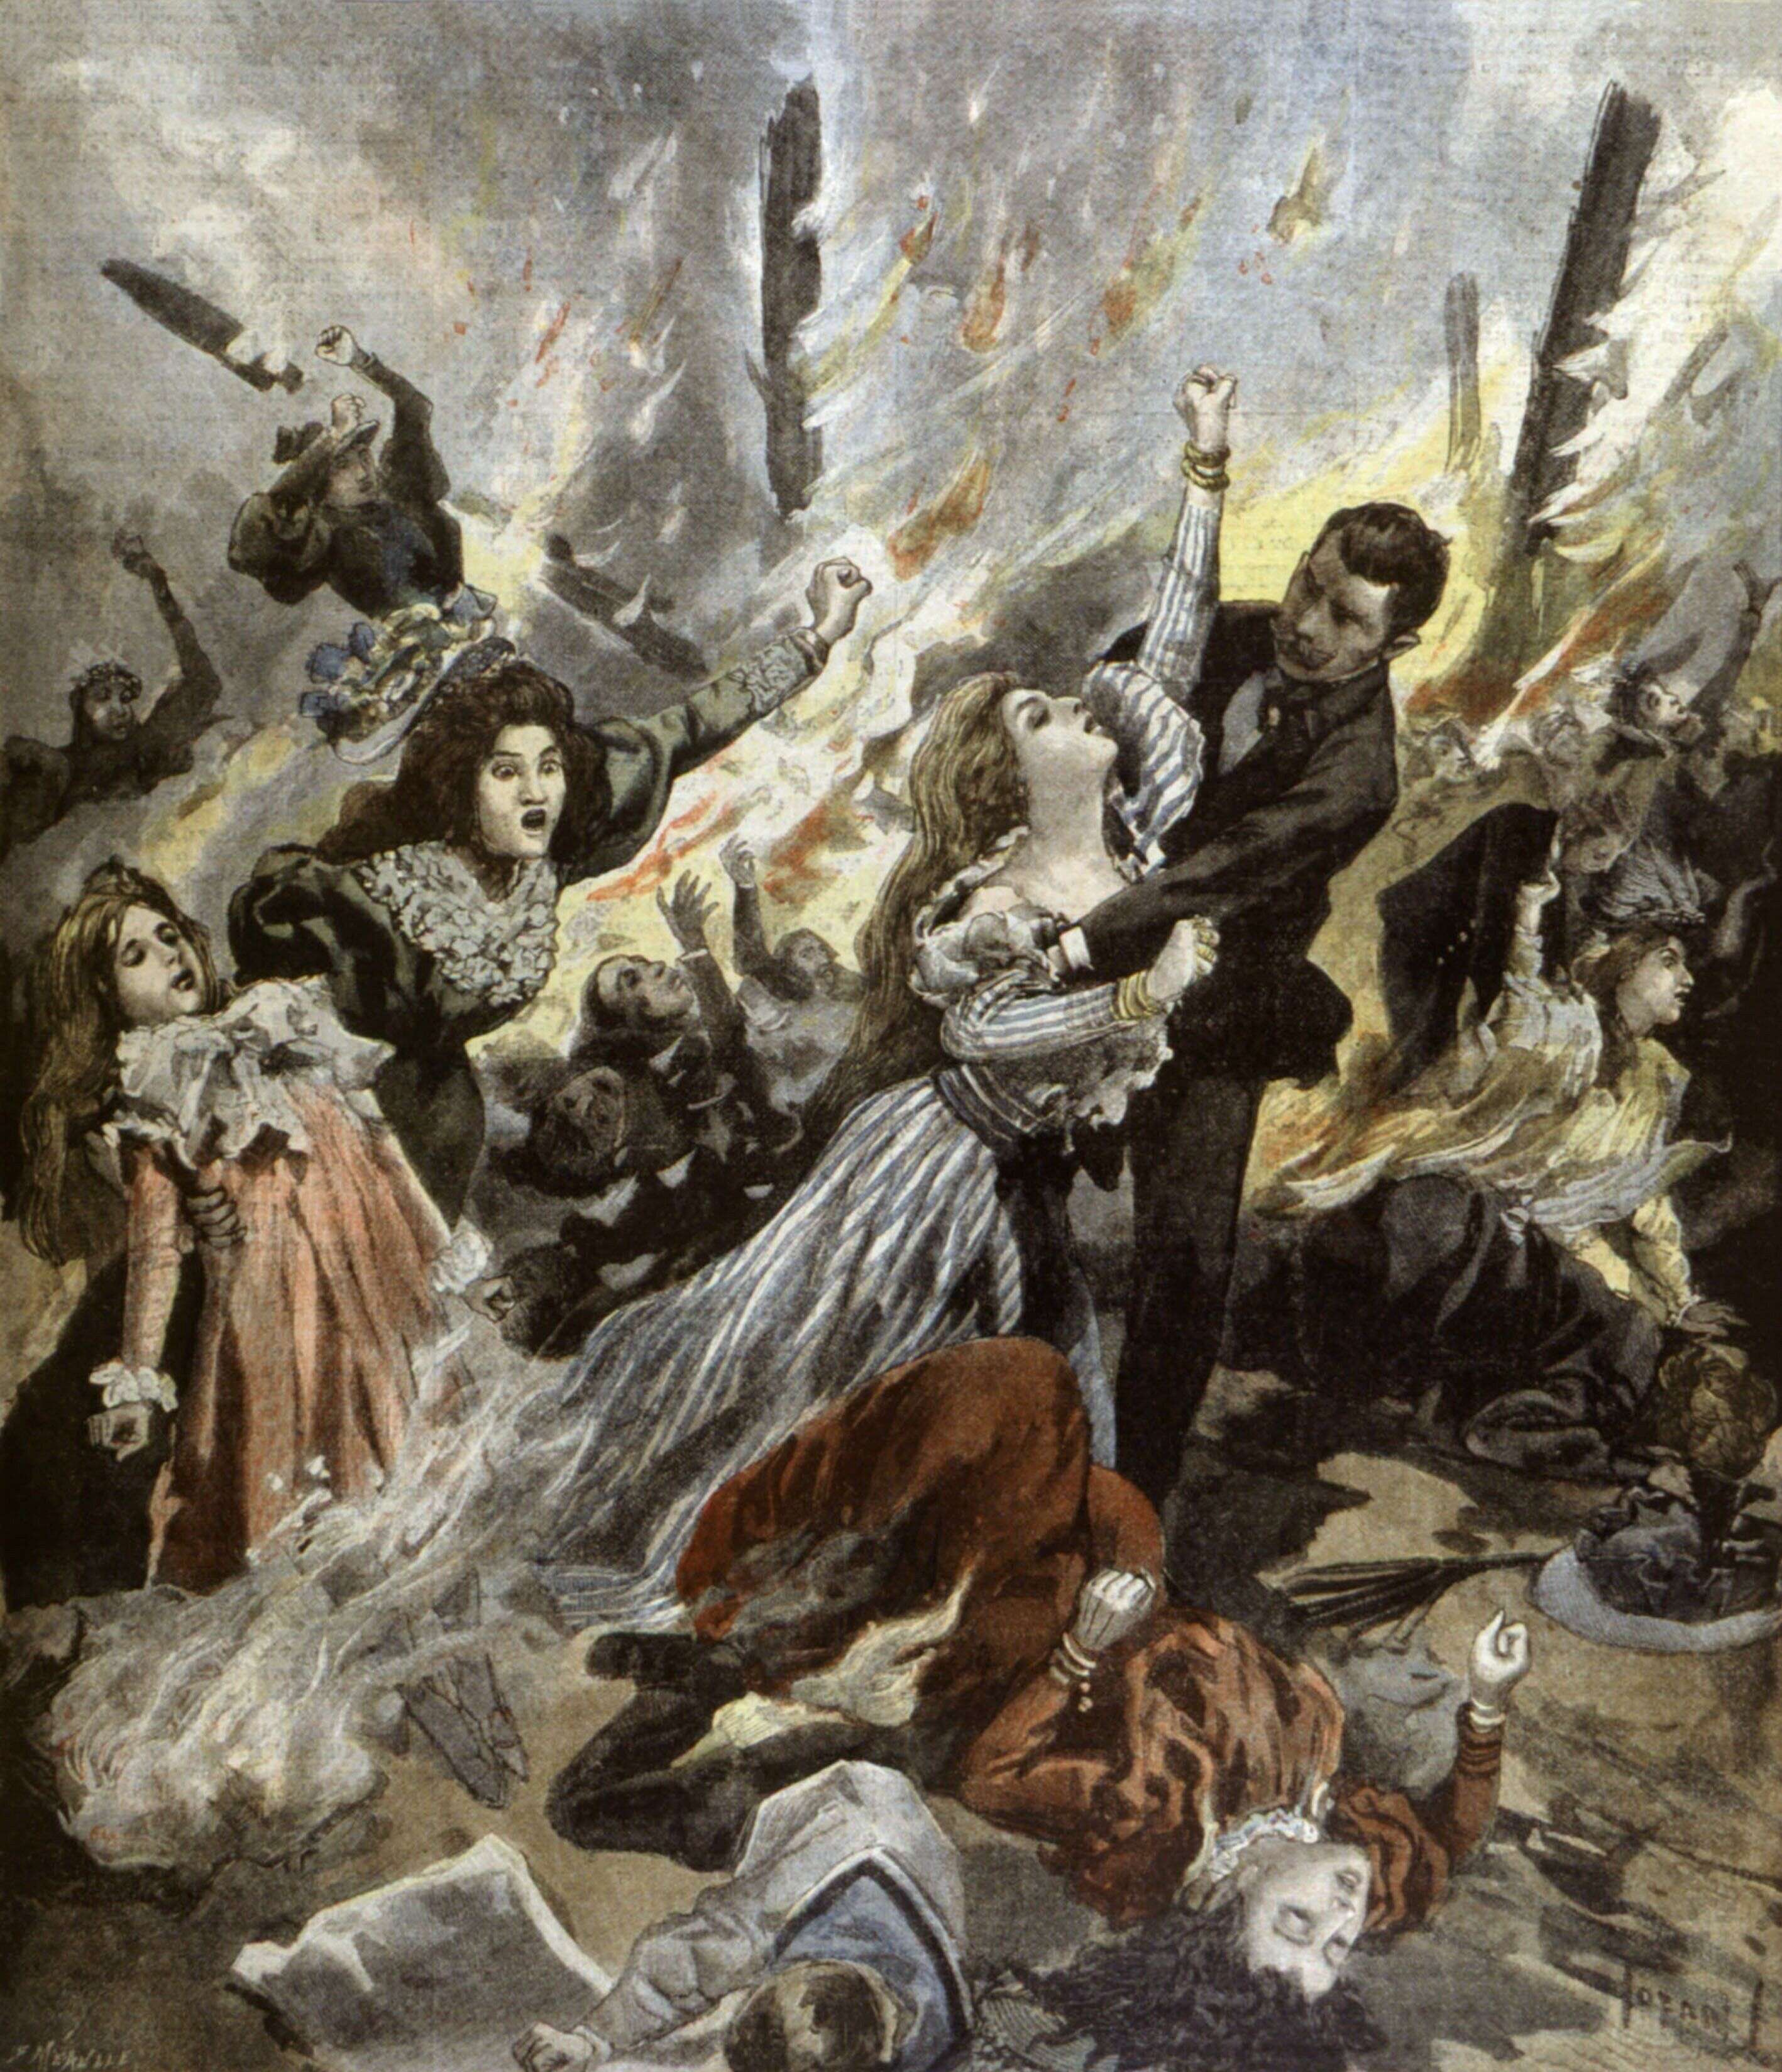 Les règles du feu - CHAPITRE II - Le bazar de la Charité 04 mai 1897